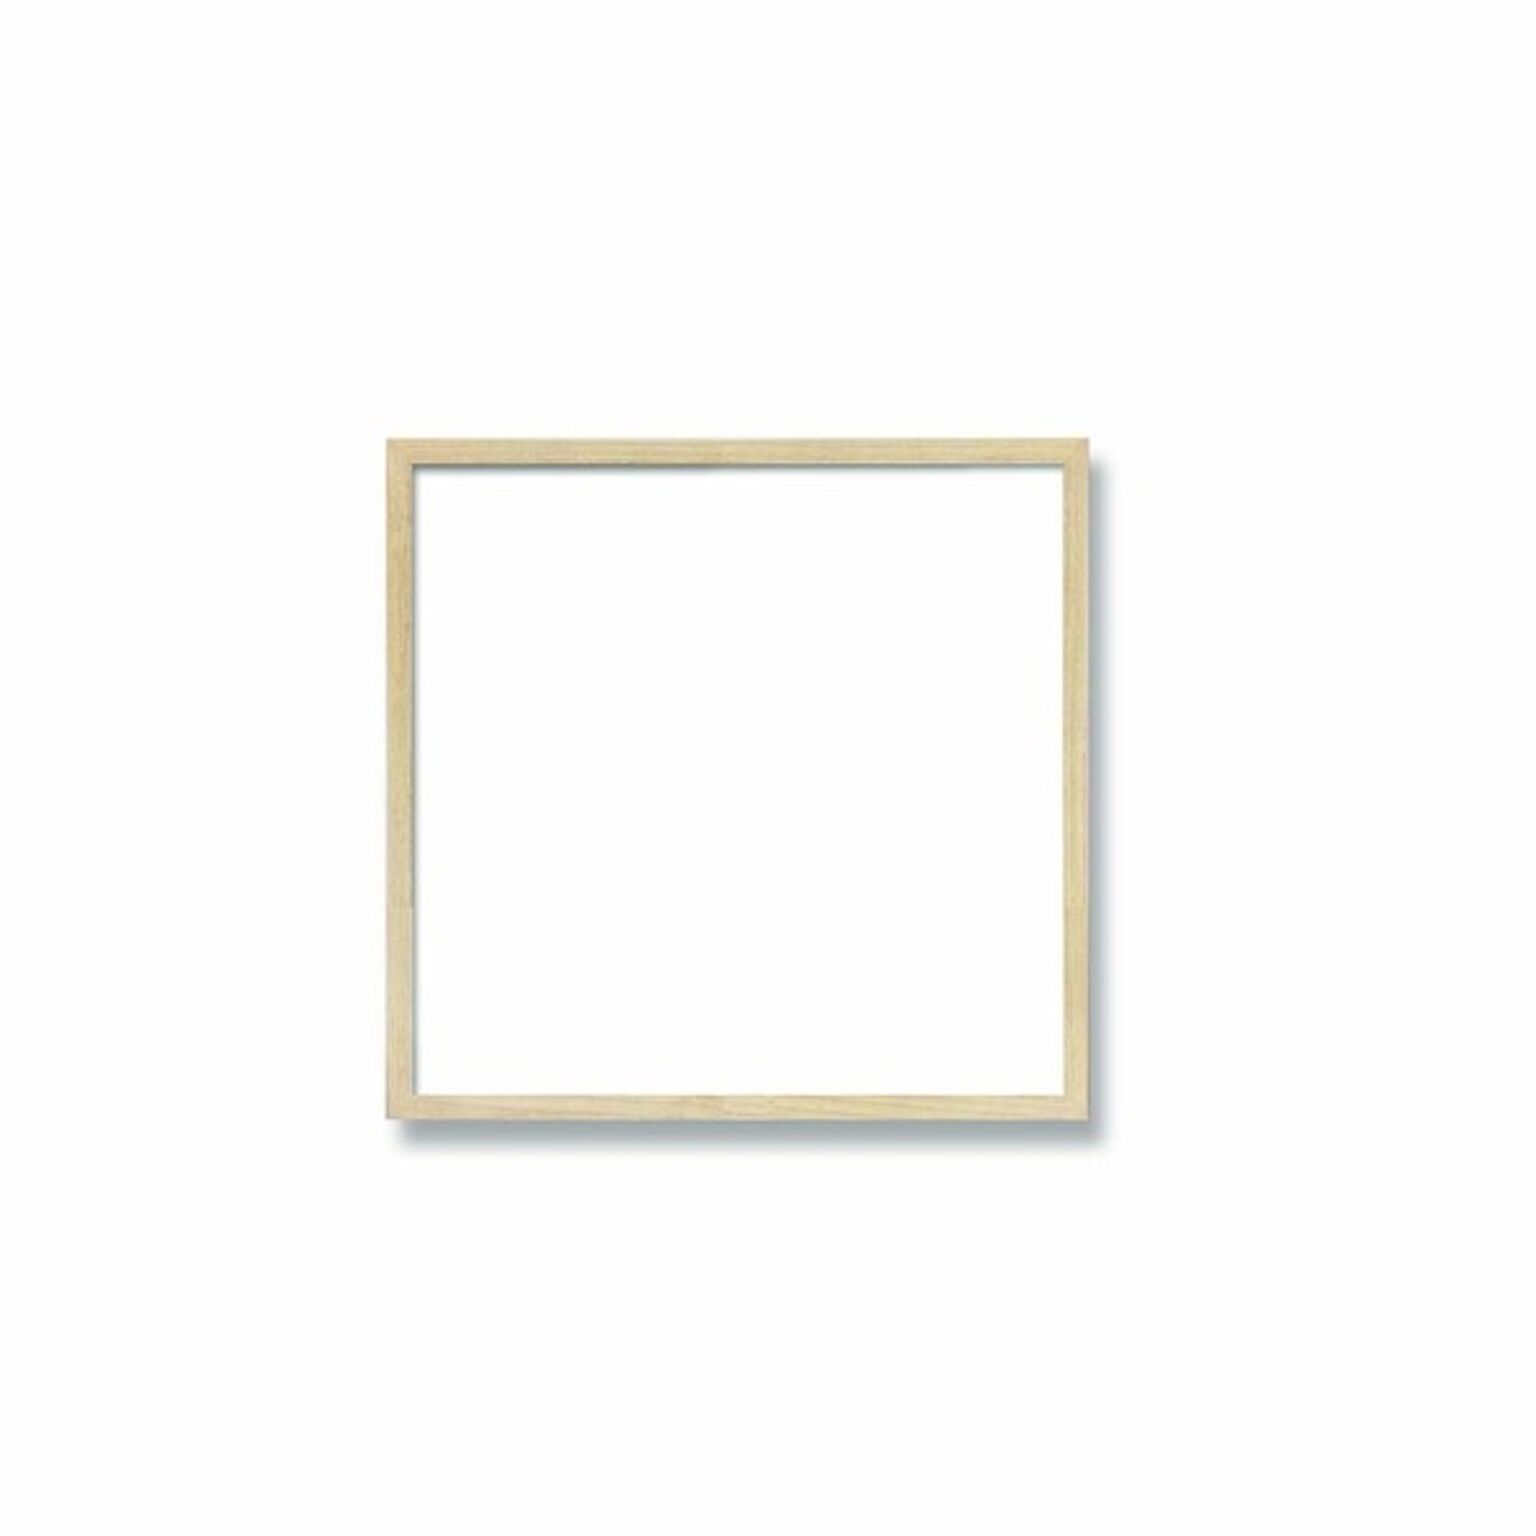 【角額】細い木製正方形額・壁掛けひも・紫外線から作品を守るUVカットアクリル付き　■9102 200角(200×200mm)「乳白」